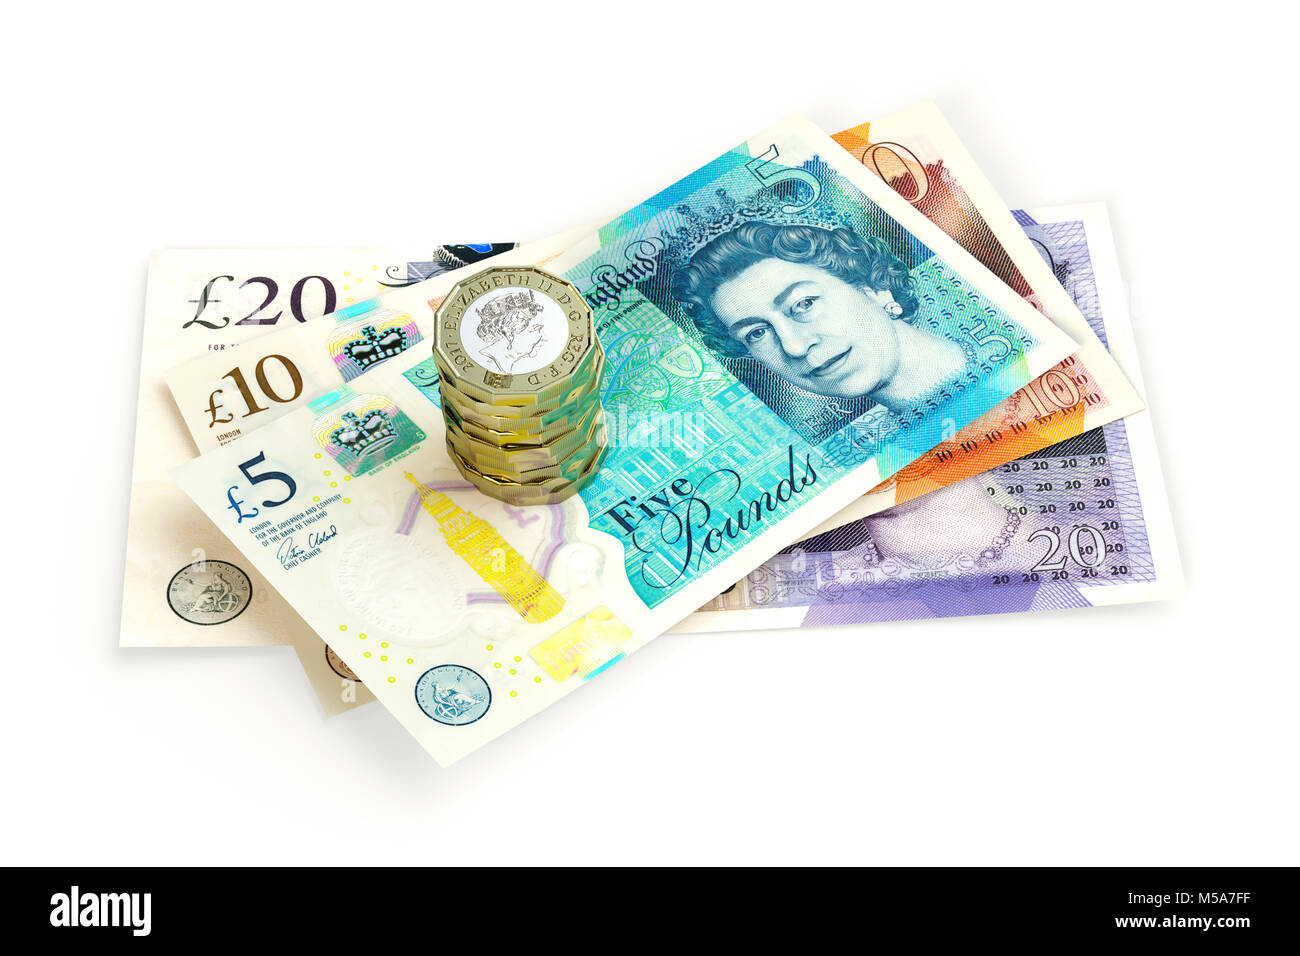 UK Geld - Neue Ausgabe 20 £ £ 10 und 5 £ Pfund Sterling Notizen schließen oben mit einem Stapel neuer 2017 Design 1 £ ein Pfund Münzen Stockfoto